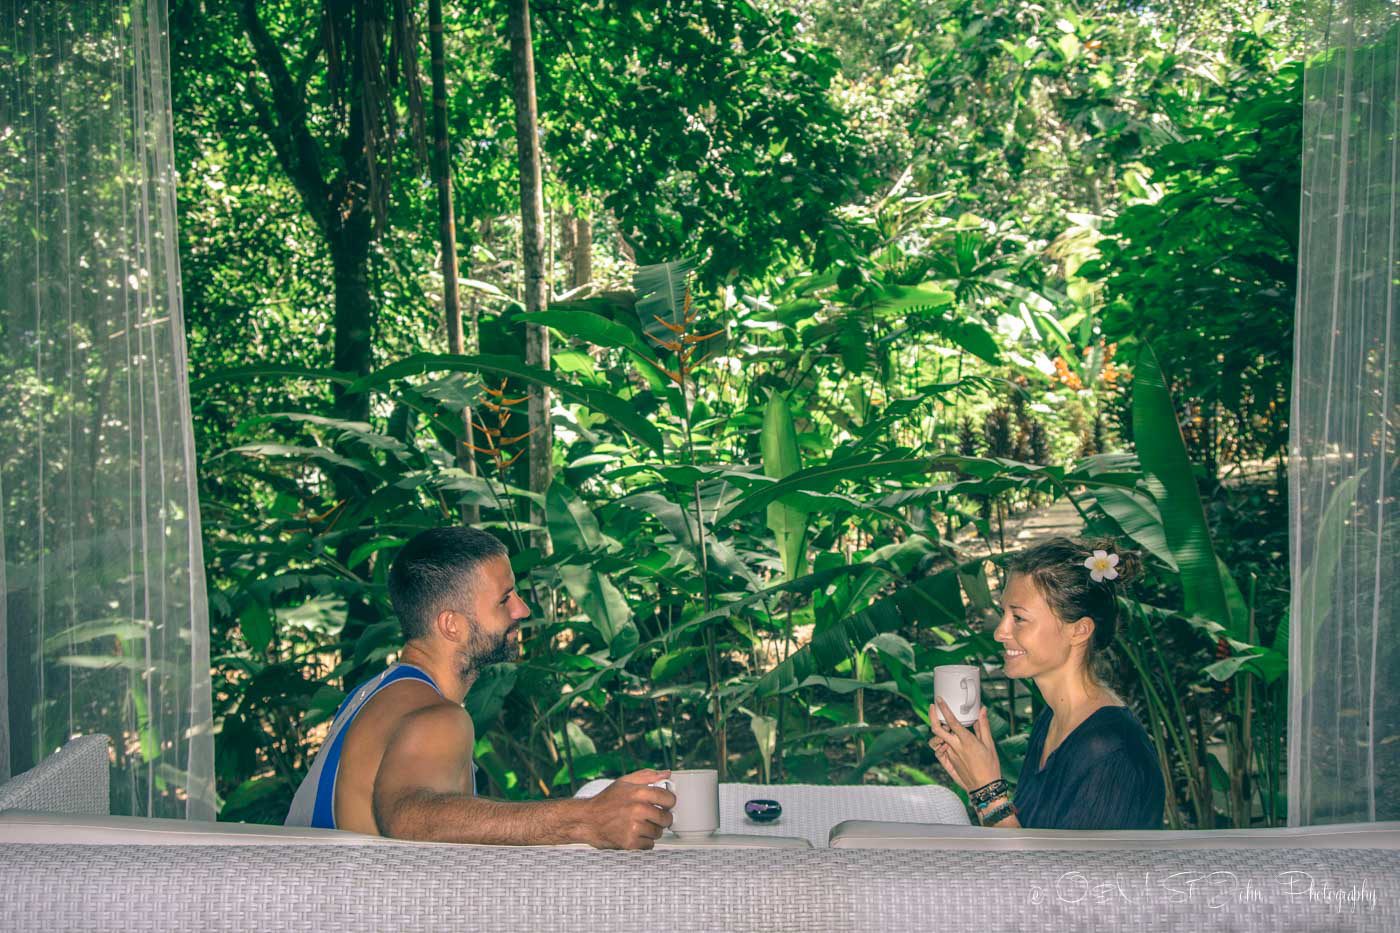 Max和Oksana喝着早茶欣赏丛林美景。乌维塔的氧气丛林别墅